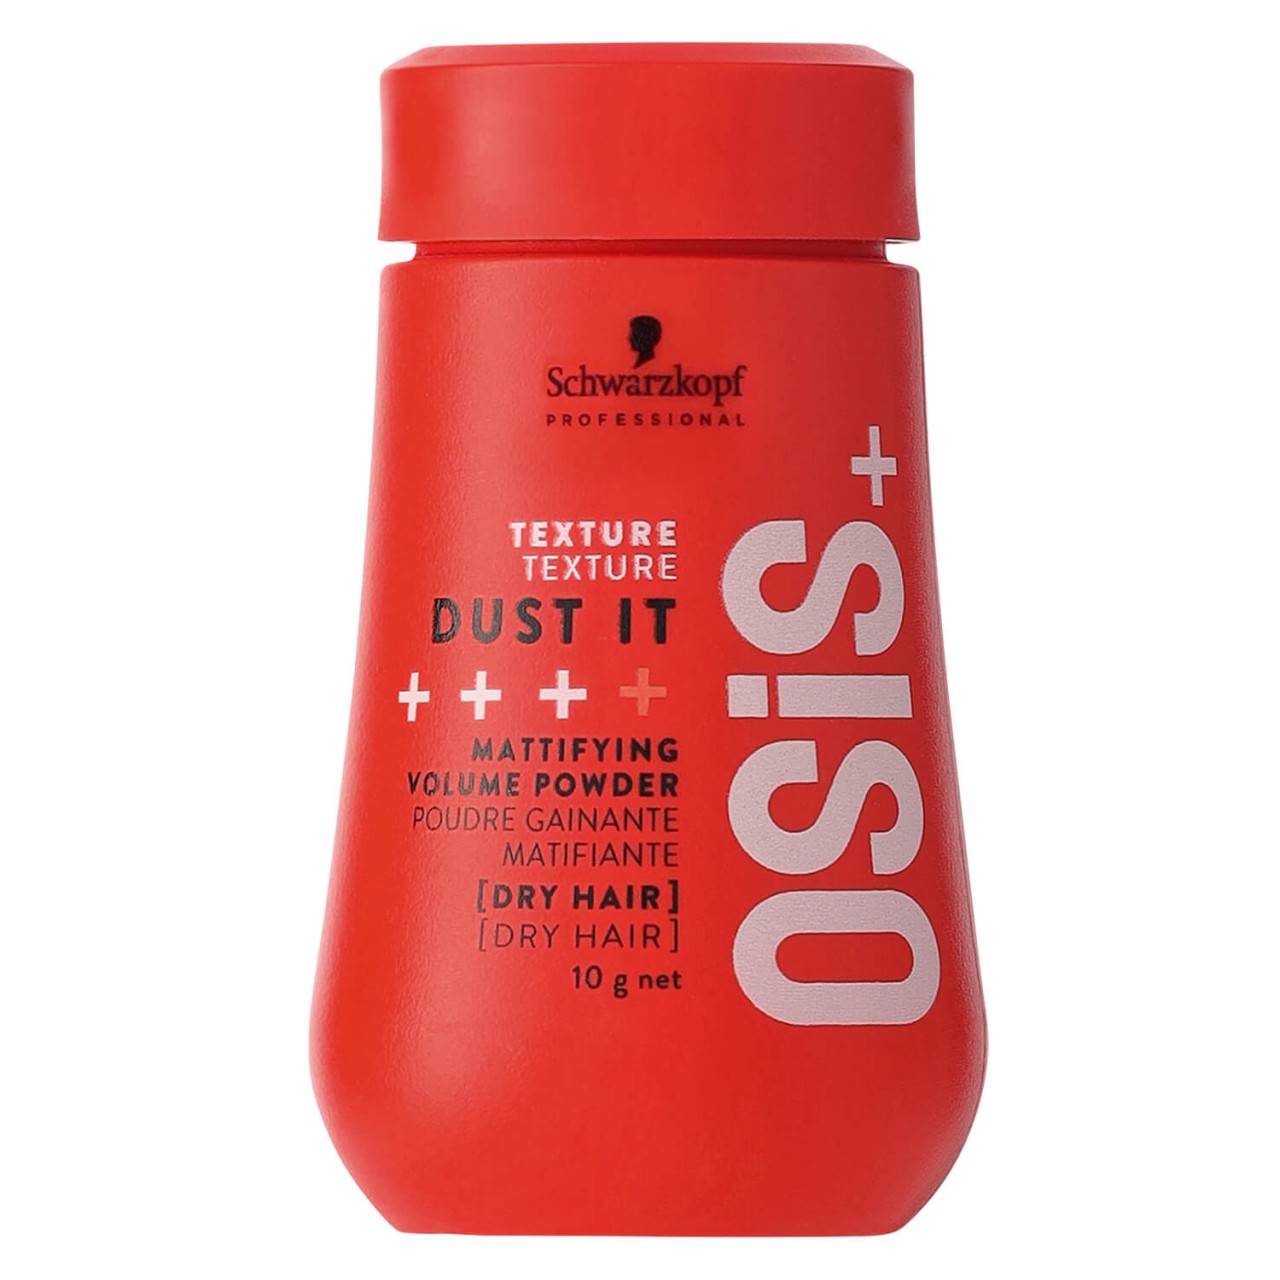 Osis - Dust it Mattifying Volume Powder von Schwarzkopf